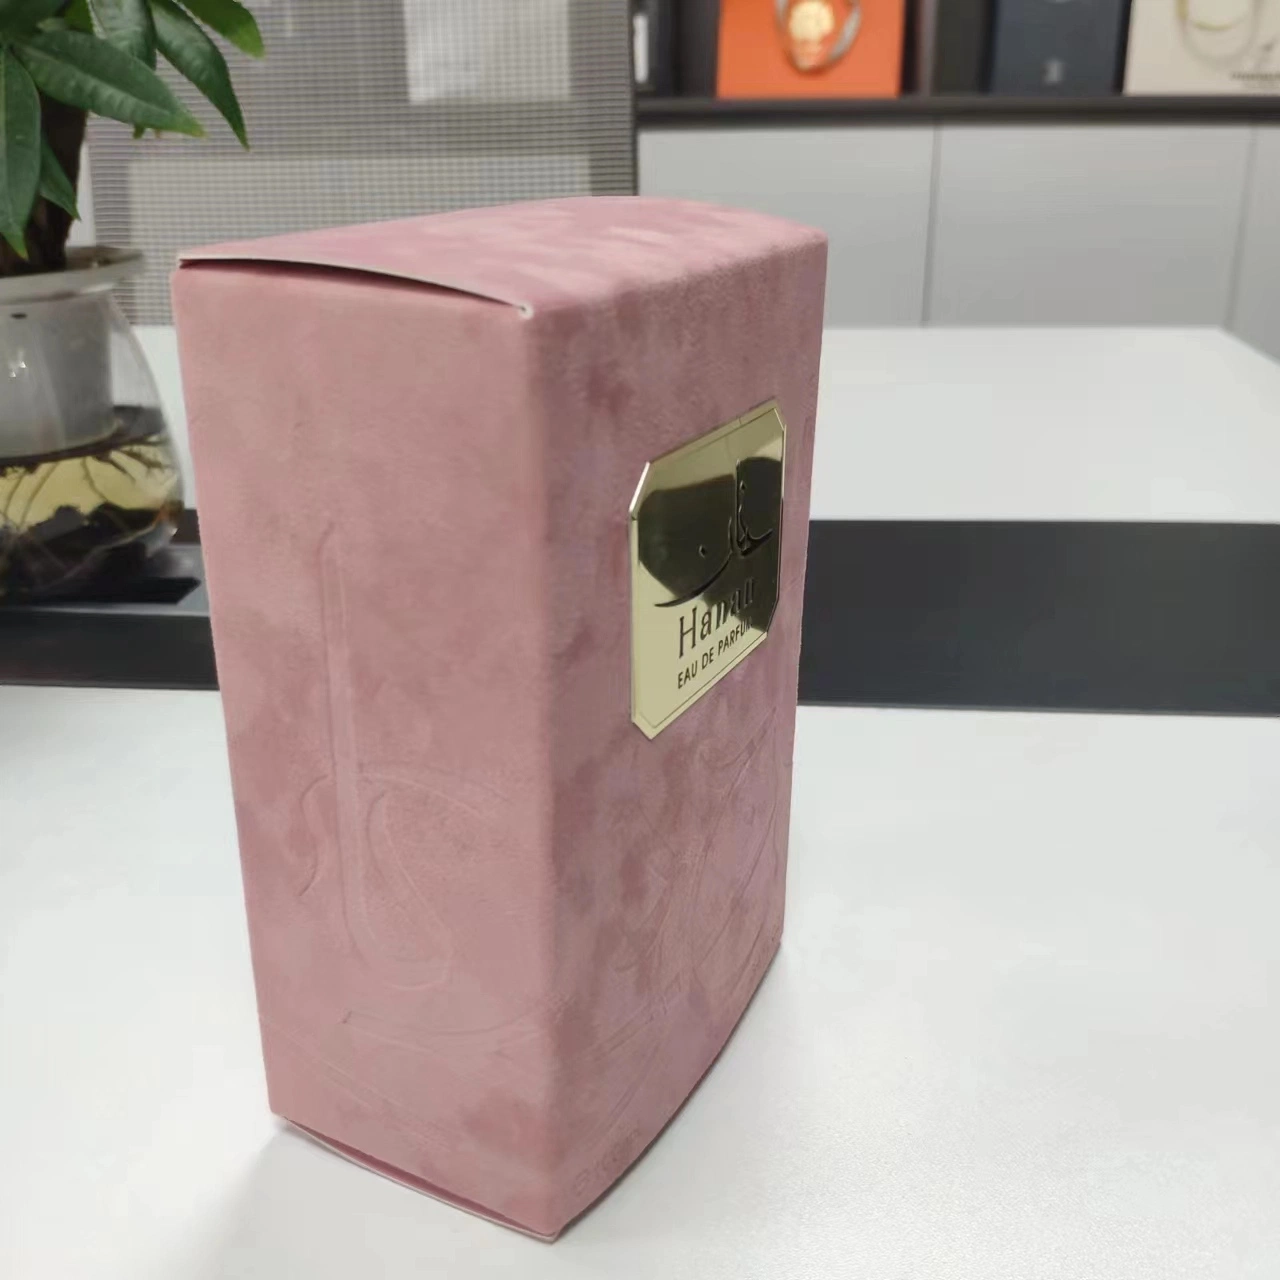 Caja de cartón para embalaje y envío o regalos